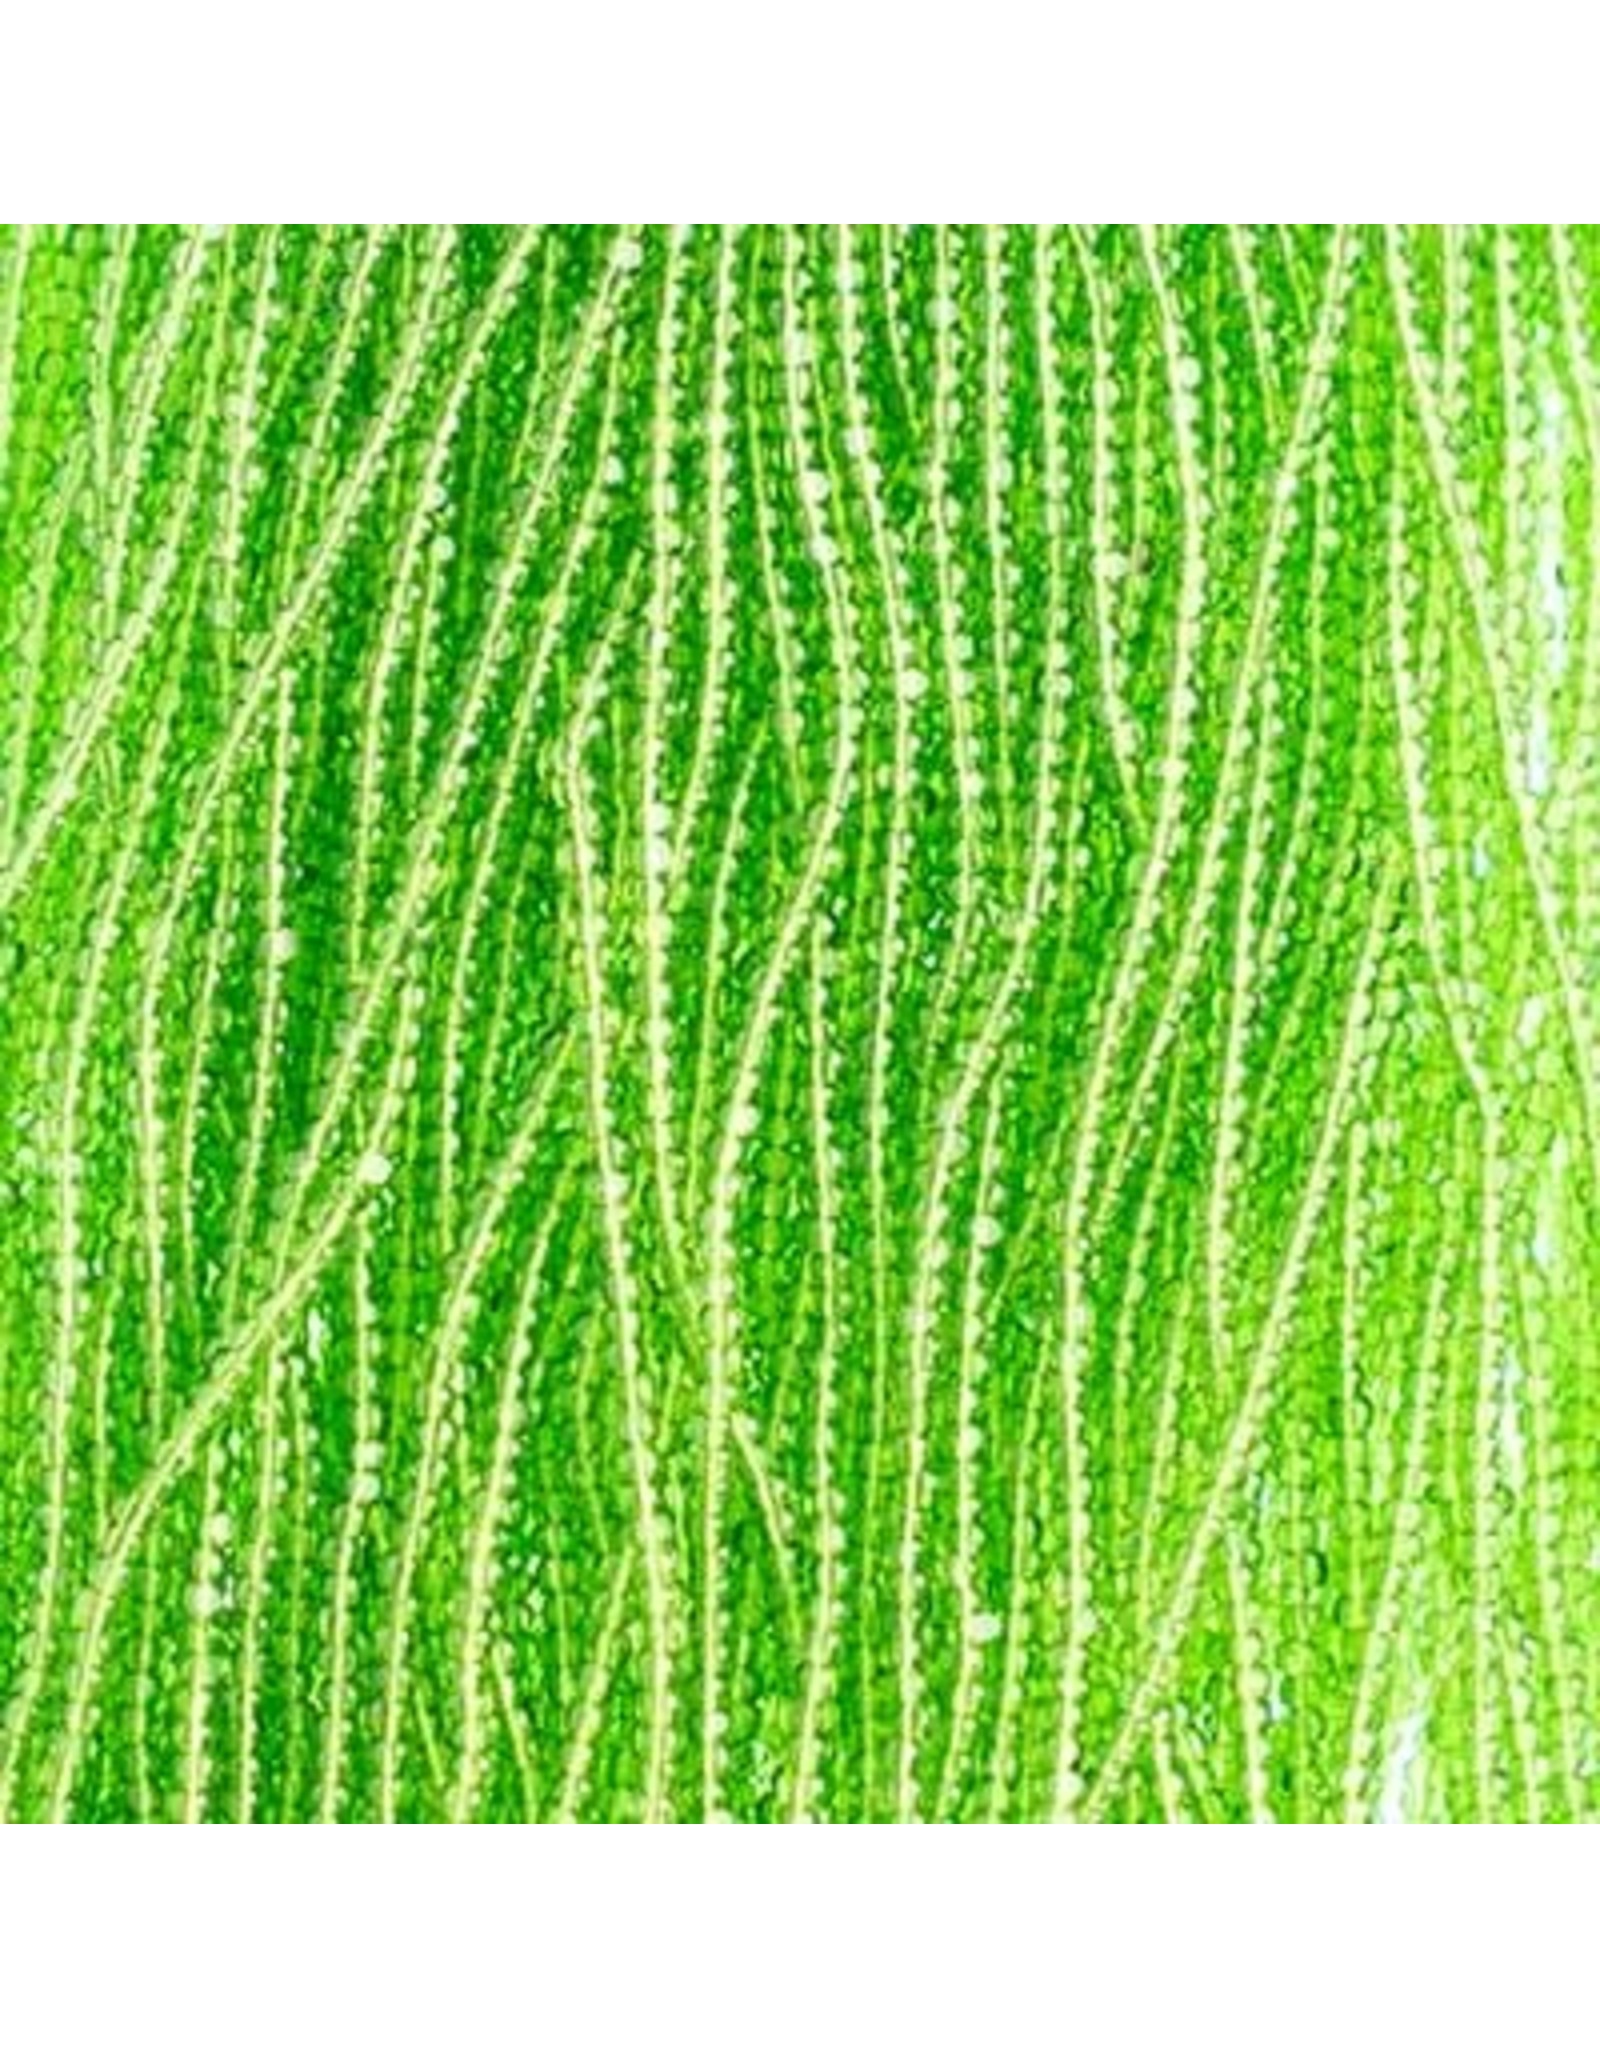 Czech 601035 13/0 Charlotte Cut Seed Hank 12g Transparent Light Green